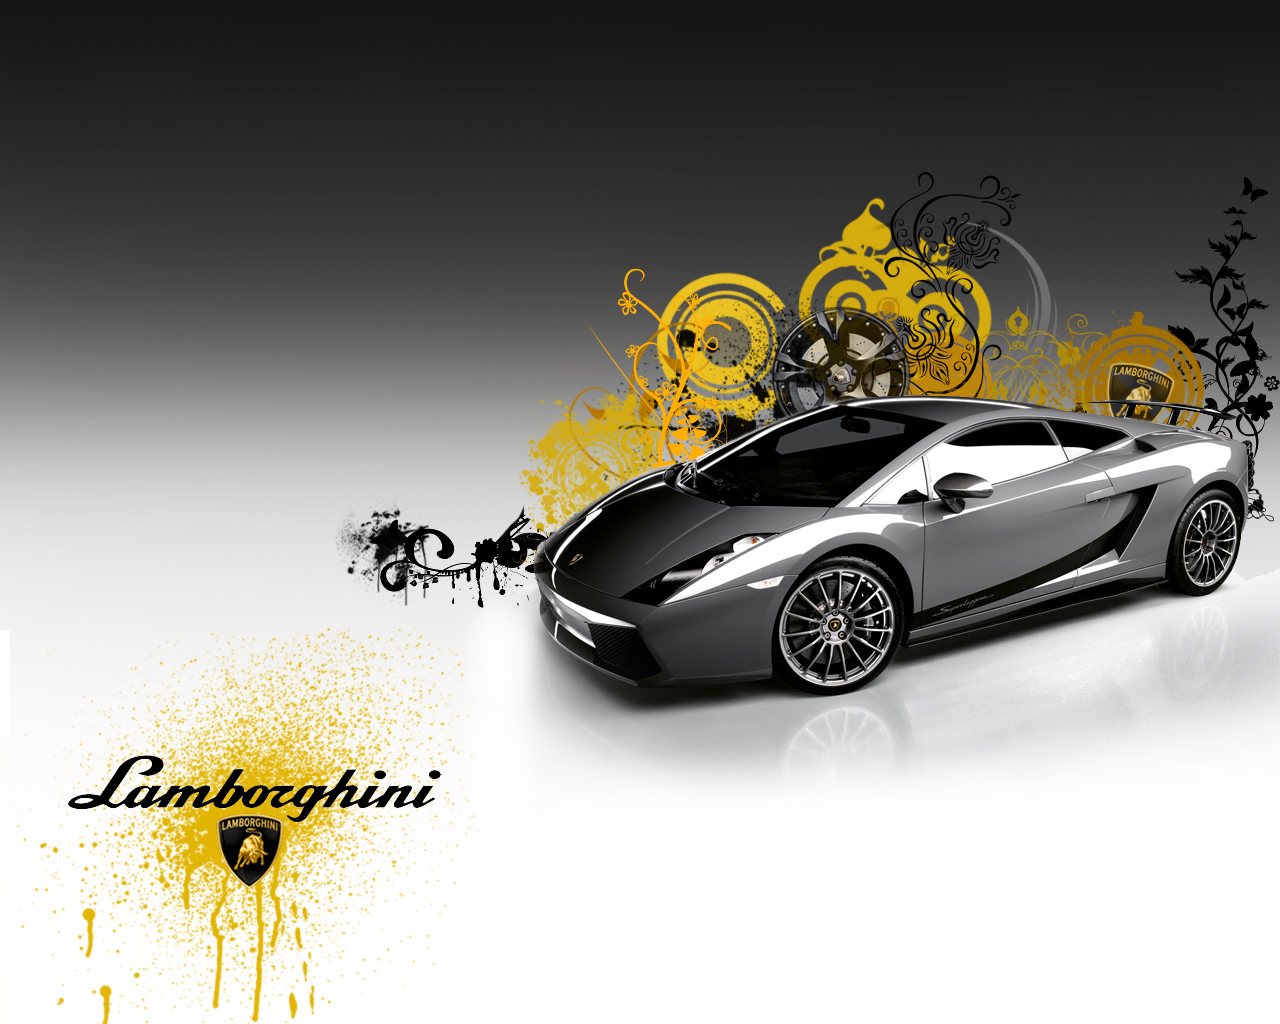 Lamborghini Cars Wallpapers Hd